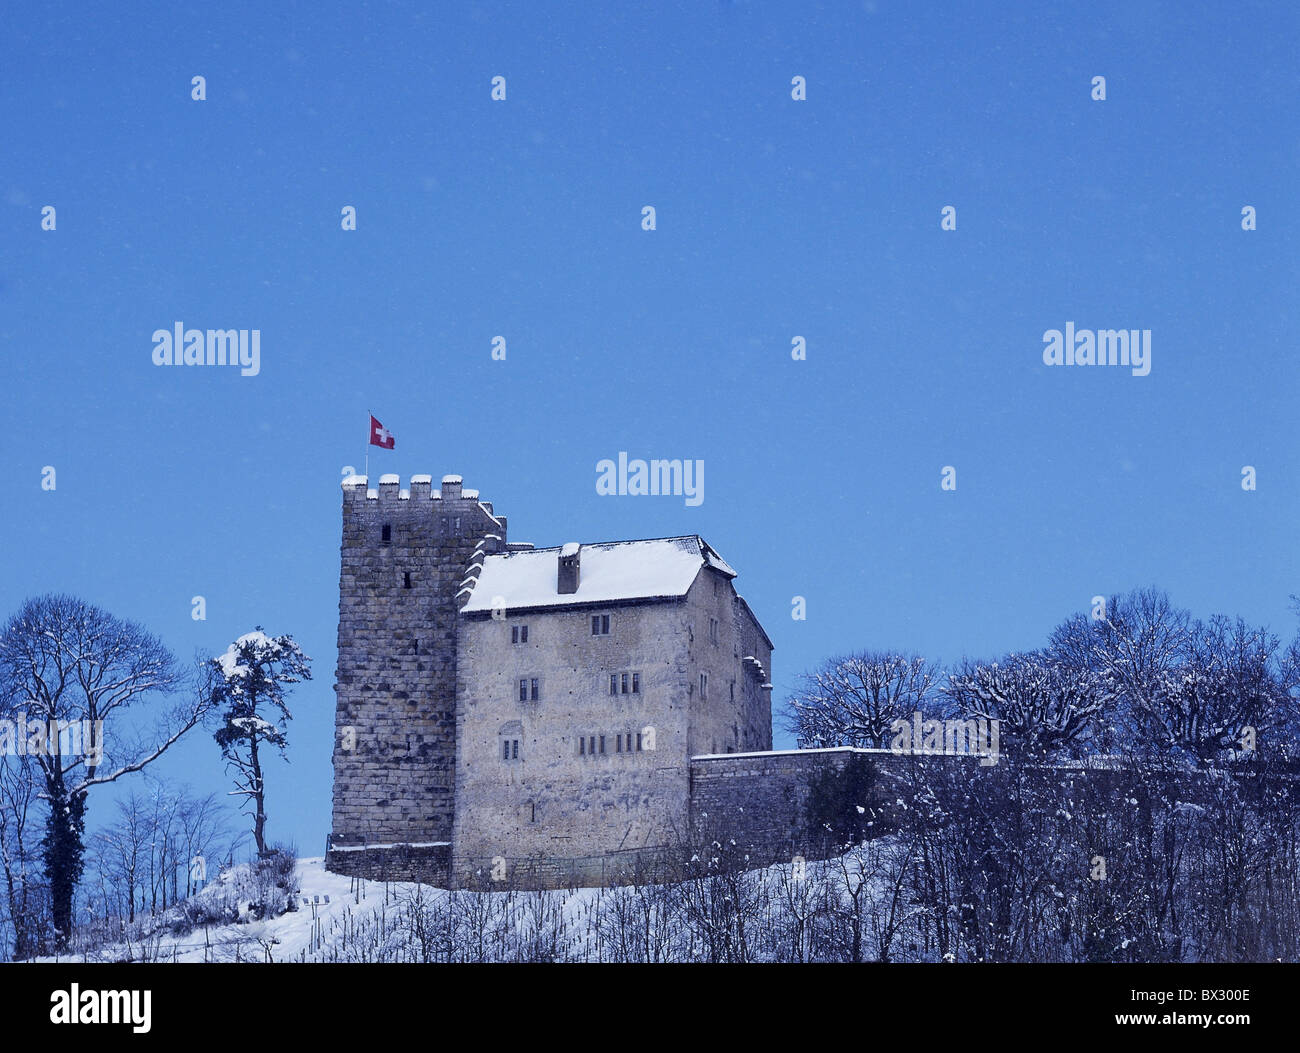 Il castello di Habsburg fortezza il castello della famiglia Habsburger storia neve invernale canton Argovia Svizzera Europa Foto Stock